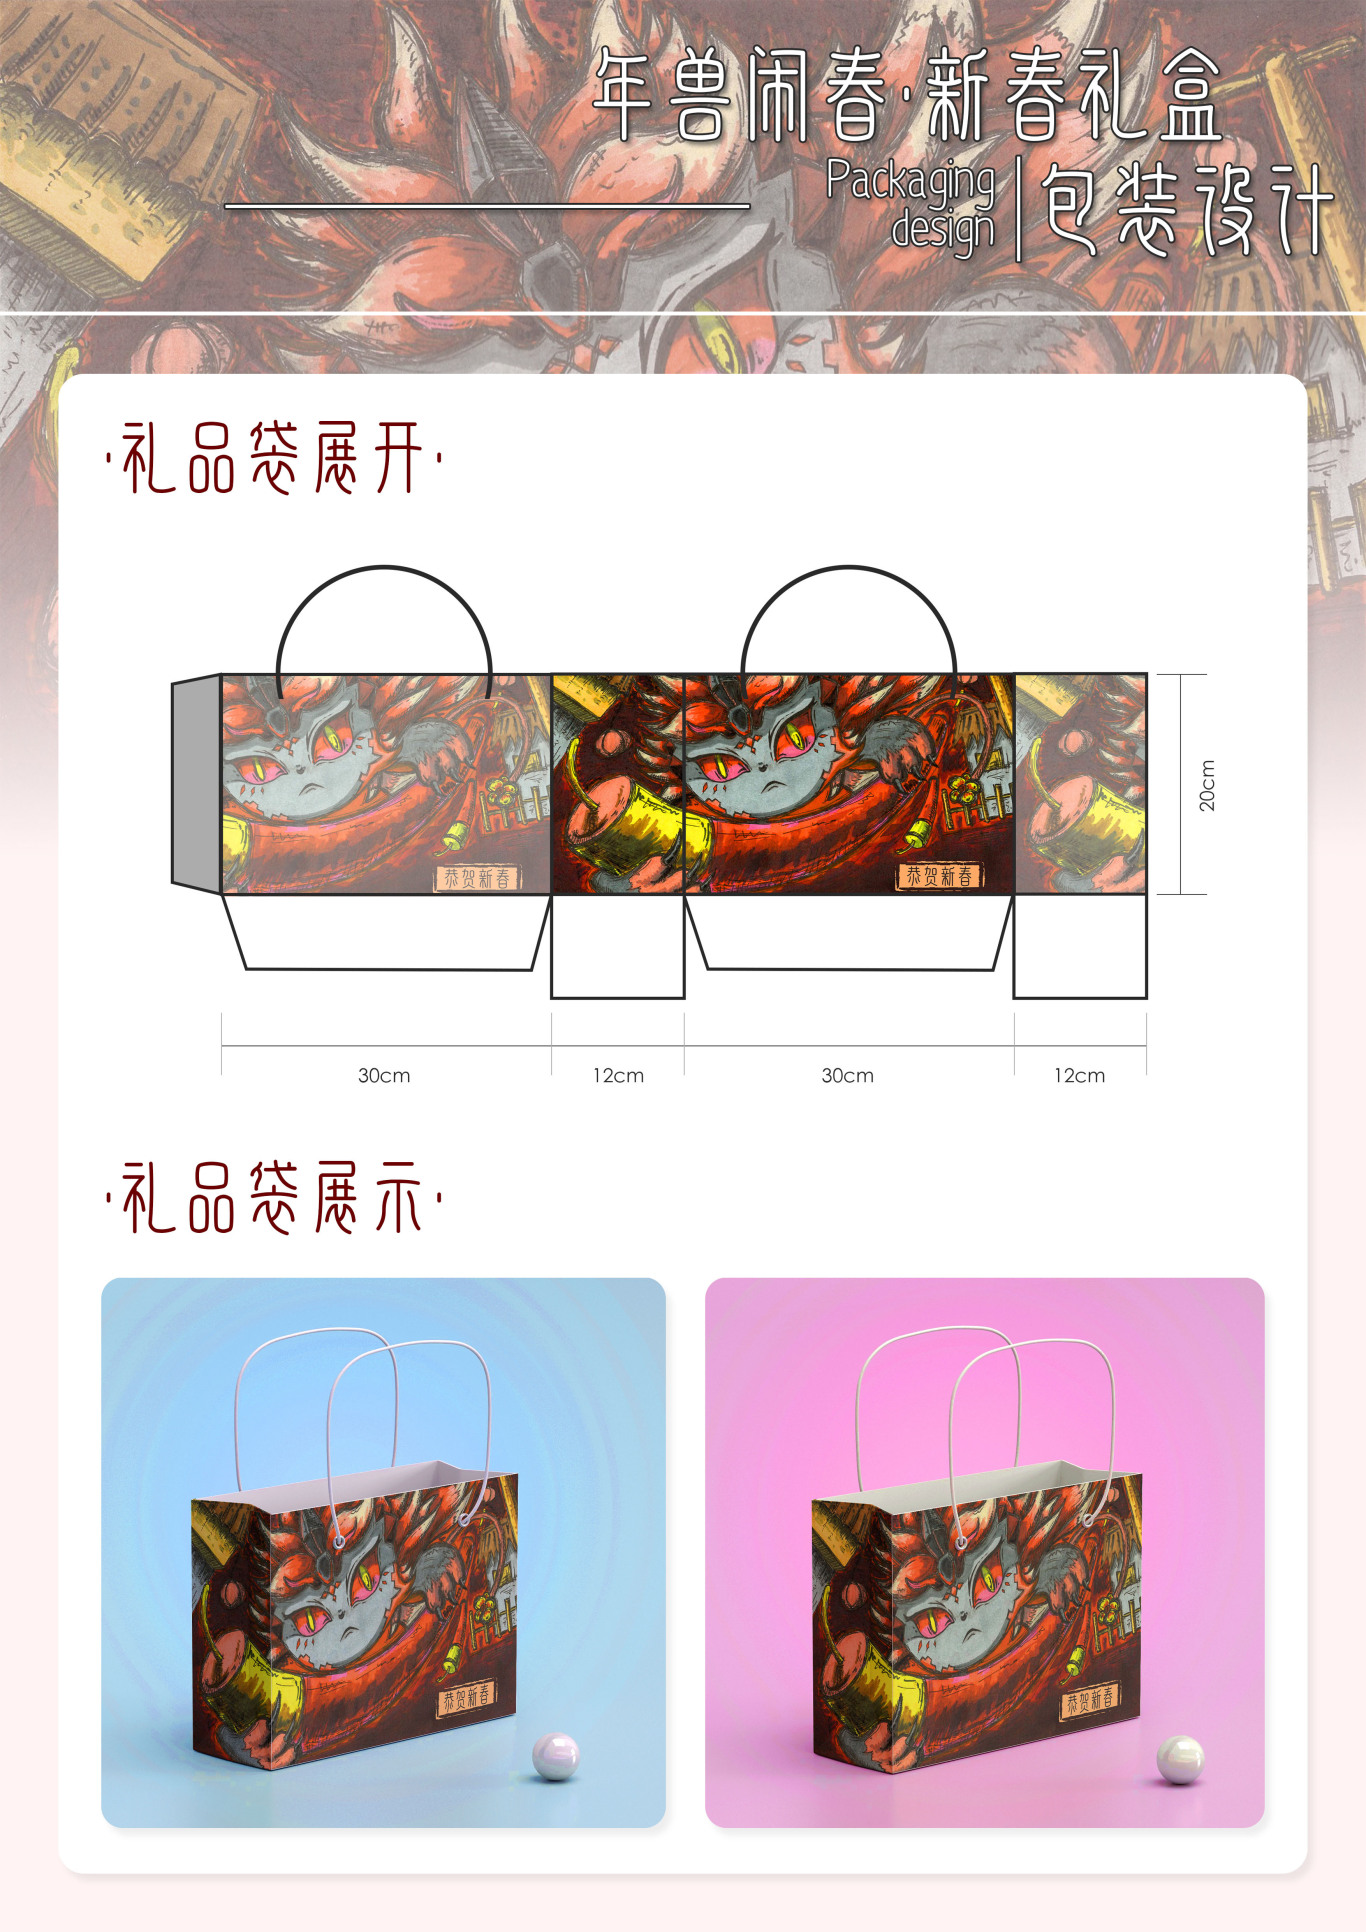 义乌小商品春节系列包装设计图2